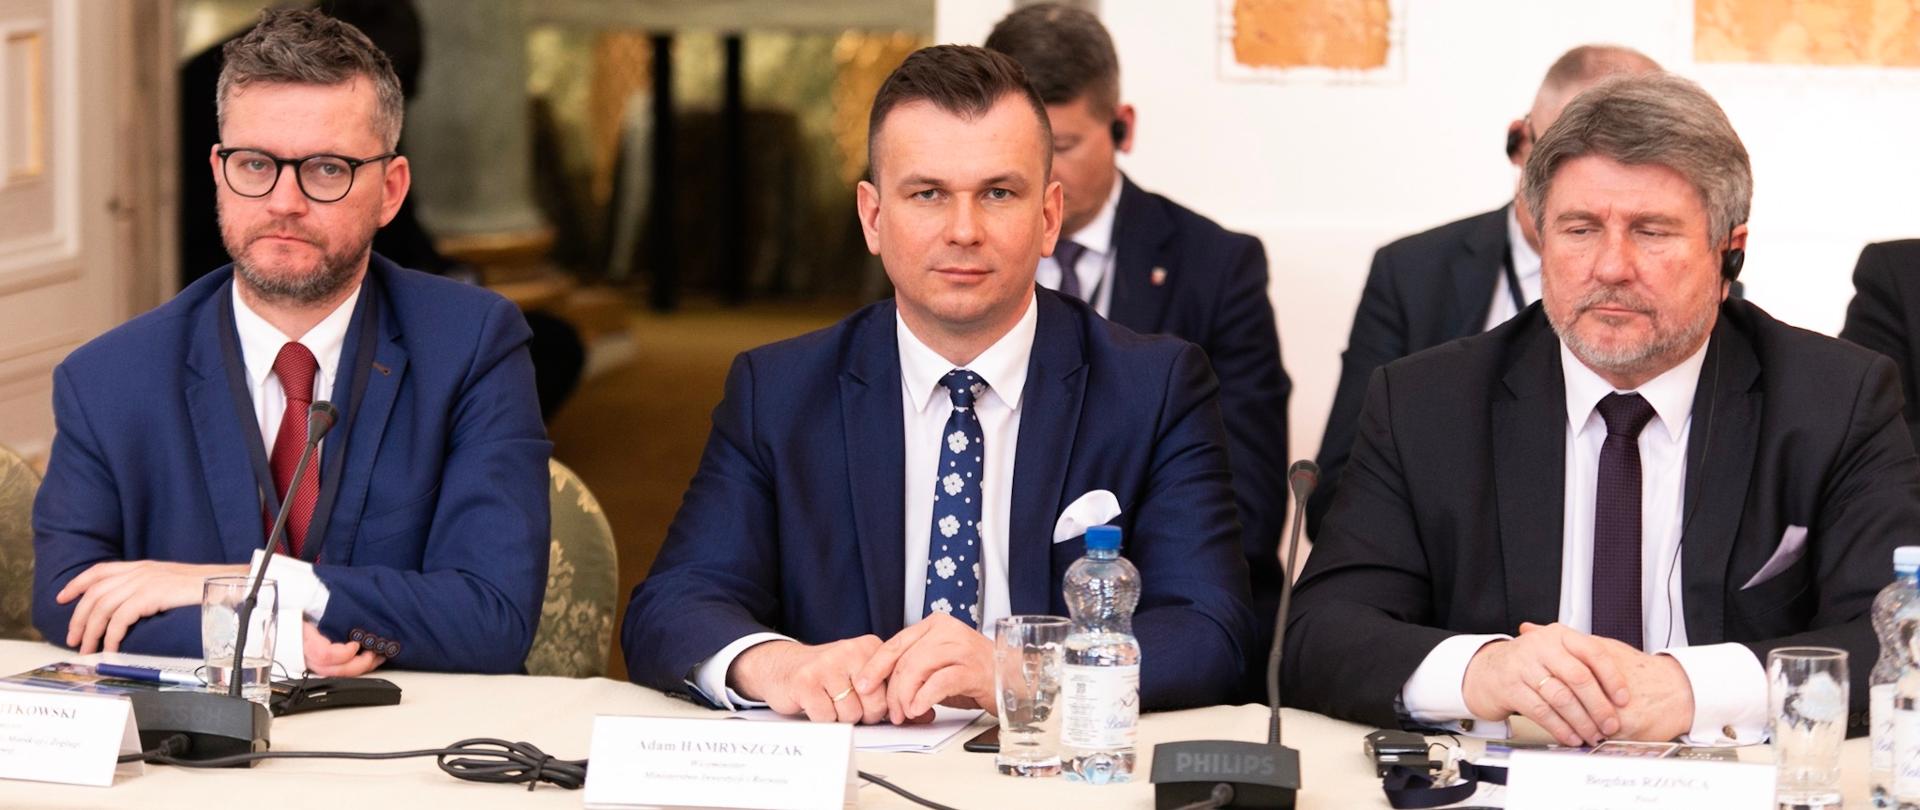 Na sali przy stole siedzą uczestnicy konferencji. Po środku siedzi wiceminister Adam Hamryszczak.